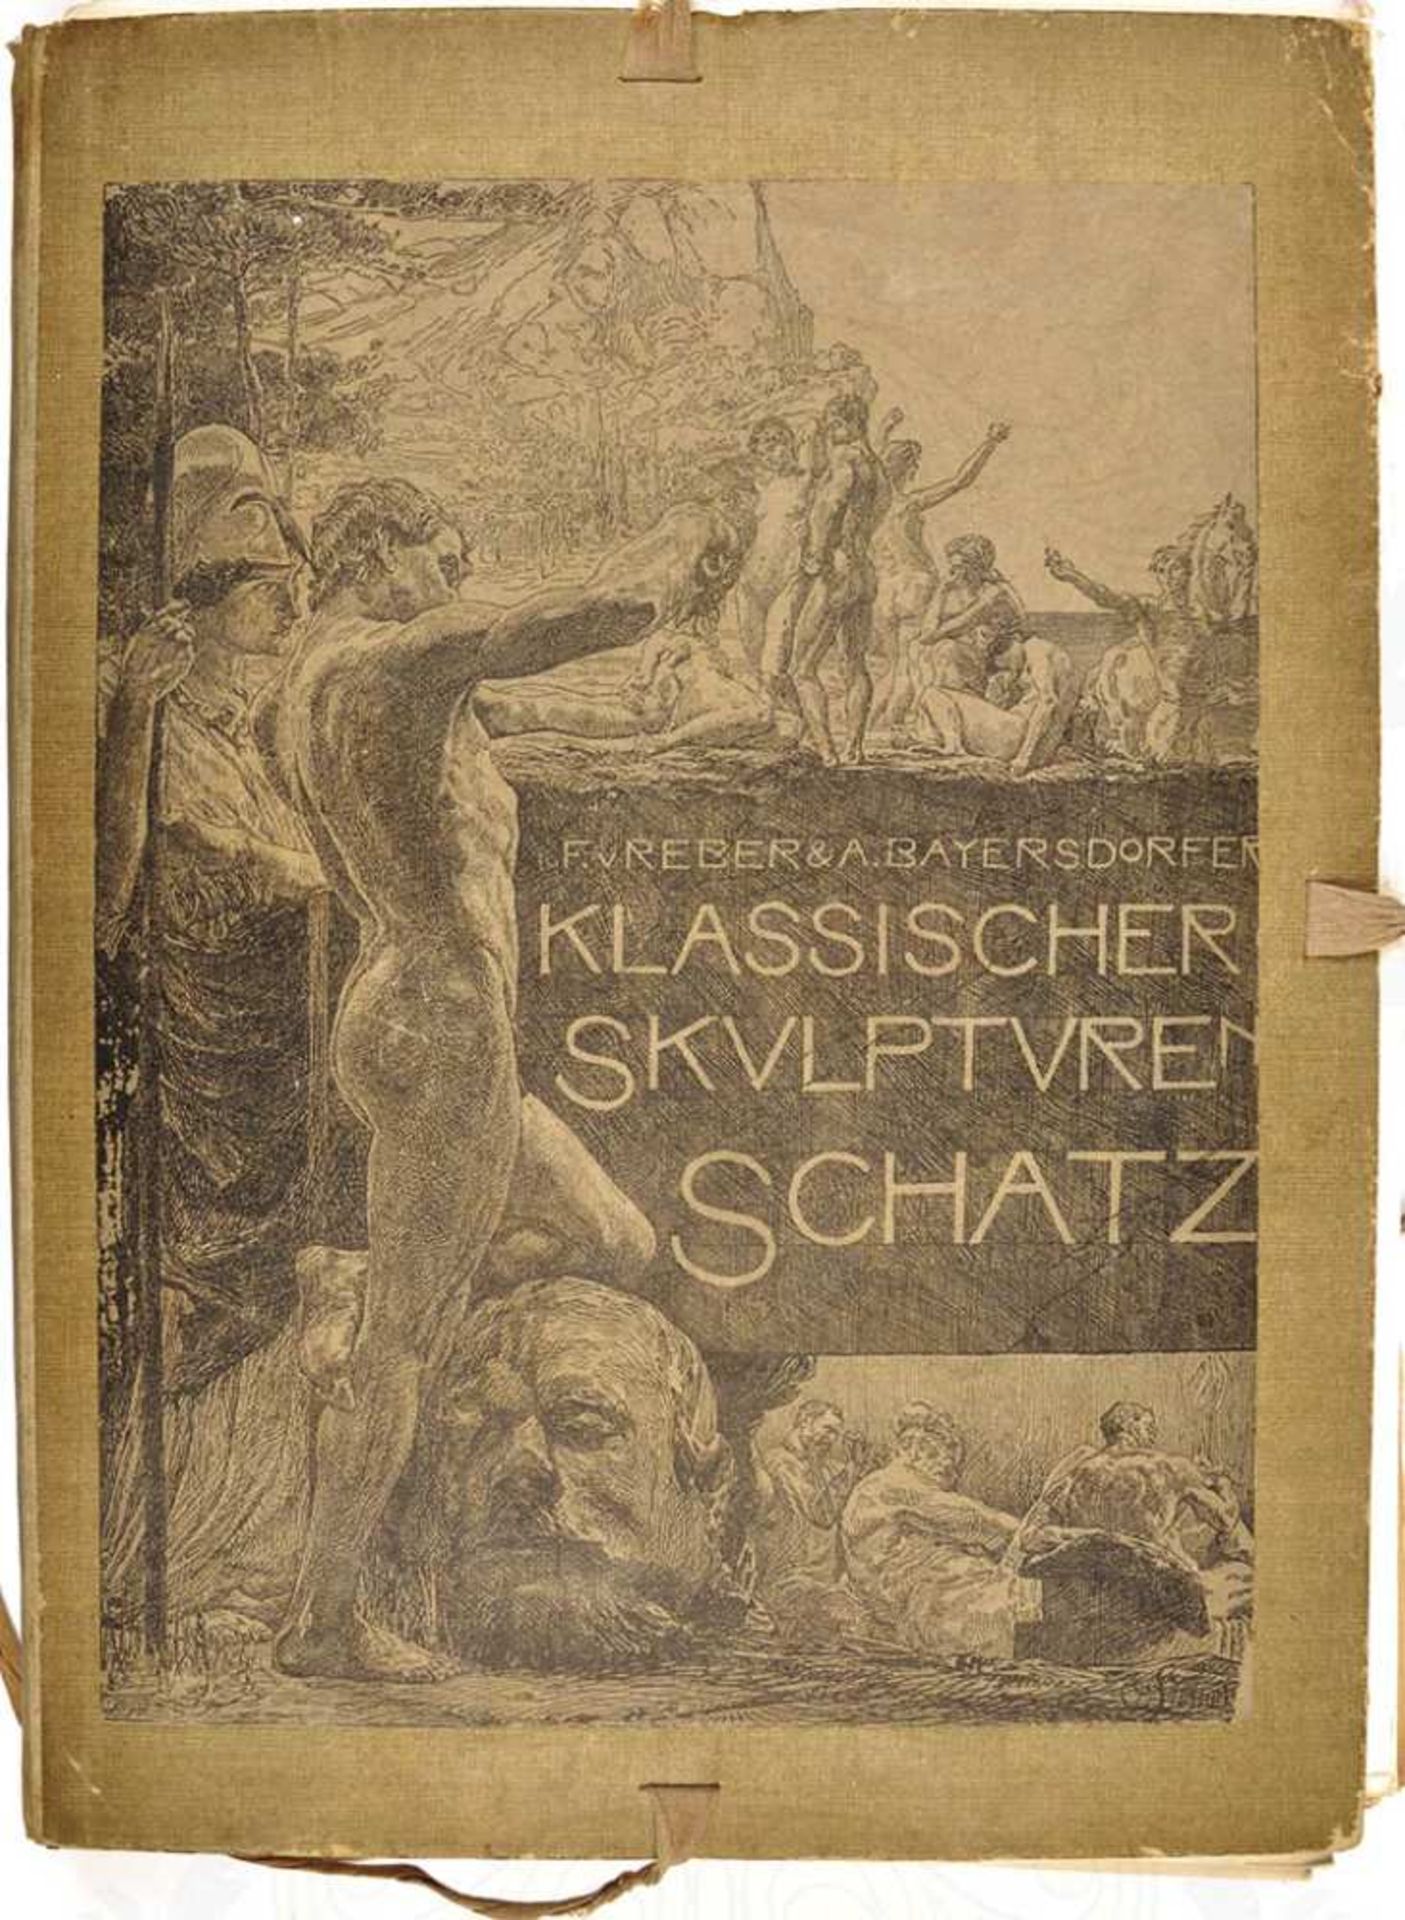 KLASSISCHER SKULPTURENSCHATZ, Hrsg. F. von Reber/A. Bayersdorfer, München 1898, über 130 s/w